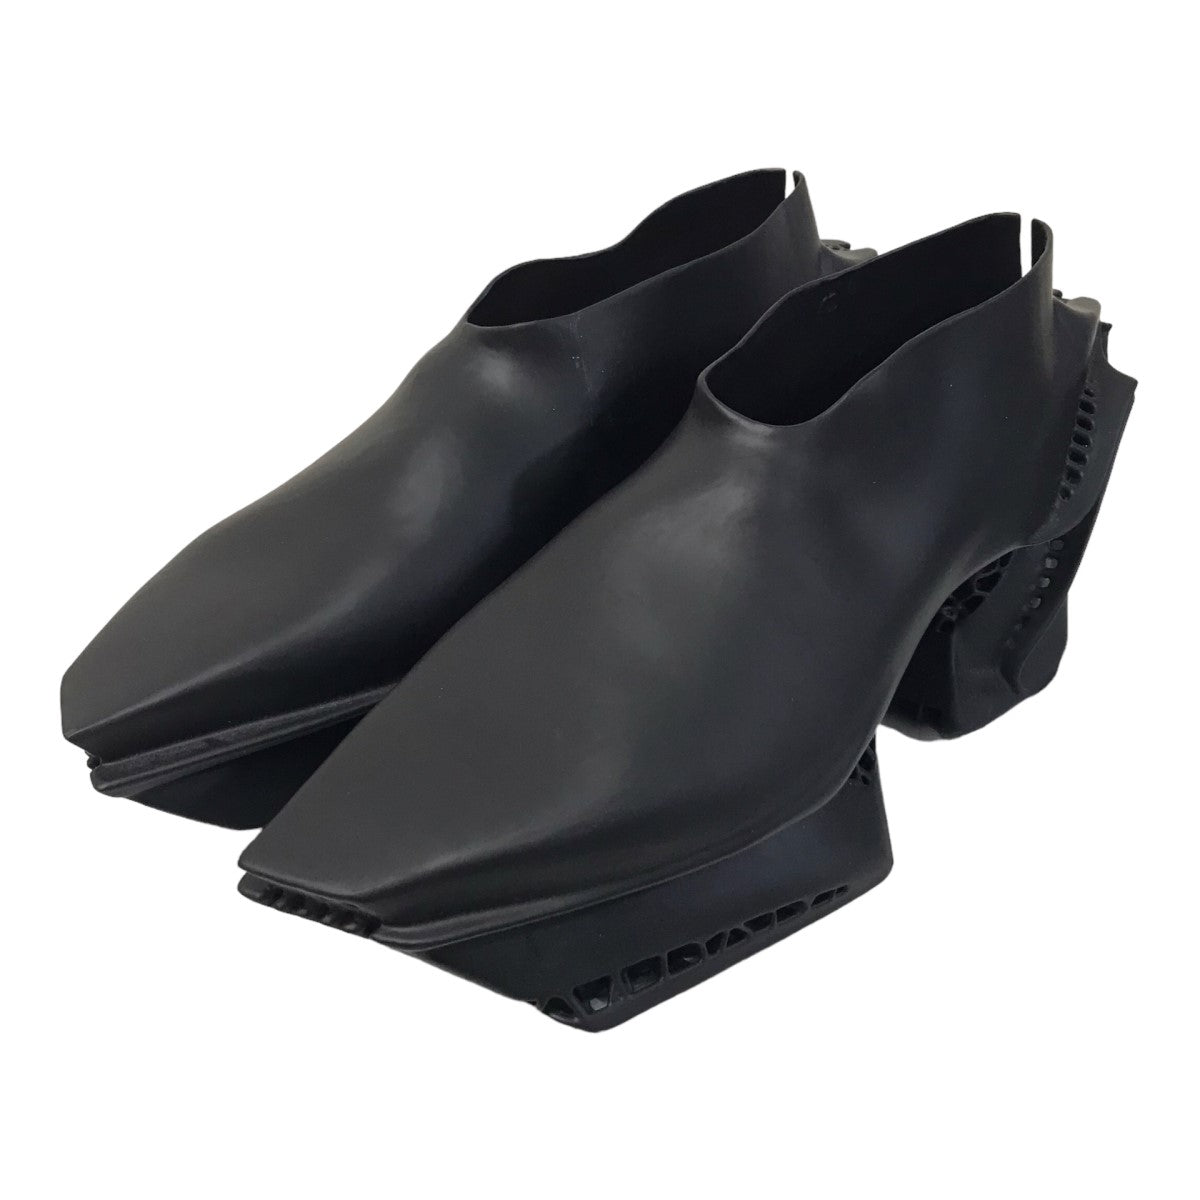 「X SCRY 3D Print Proliferation Shoes」3Dプリンティングシューズ